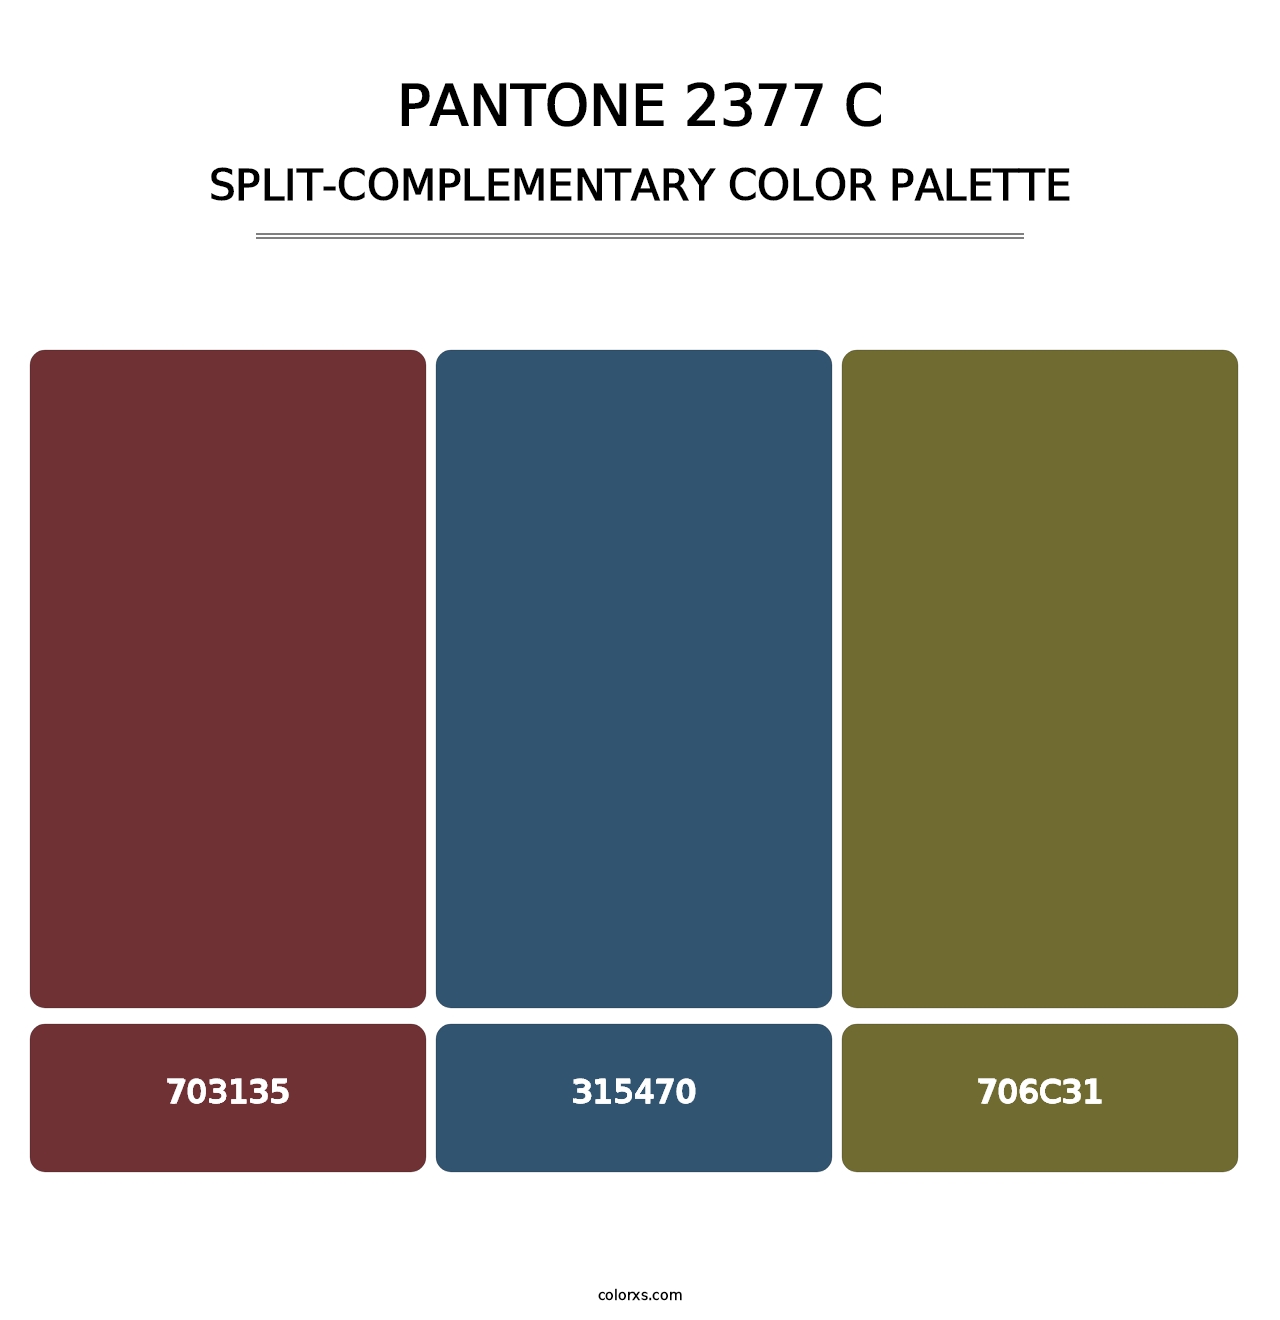 PANTONE 2377 C - Split-Complementary Color Palette